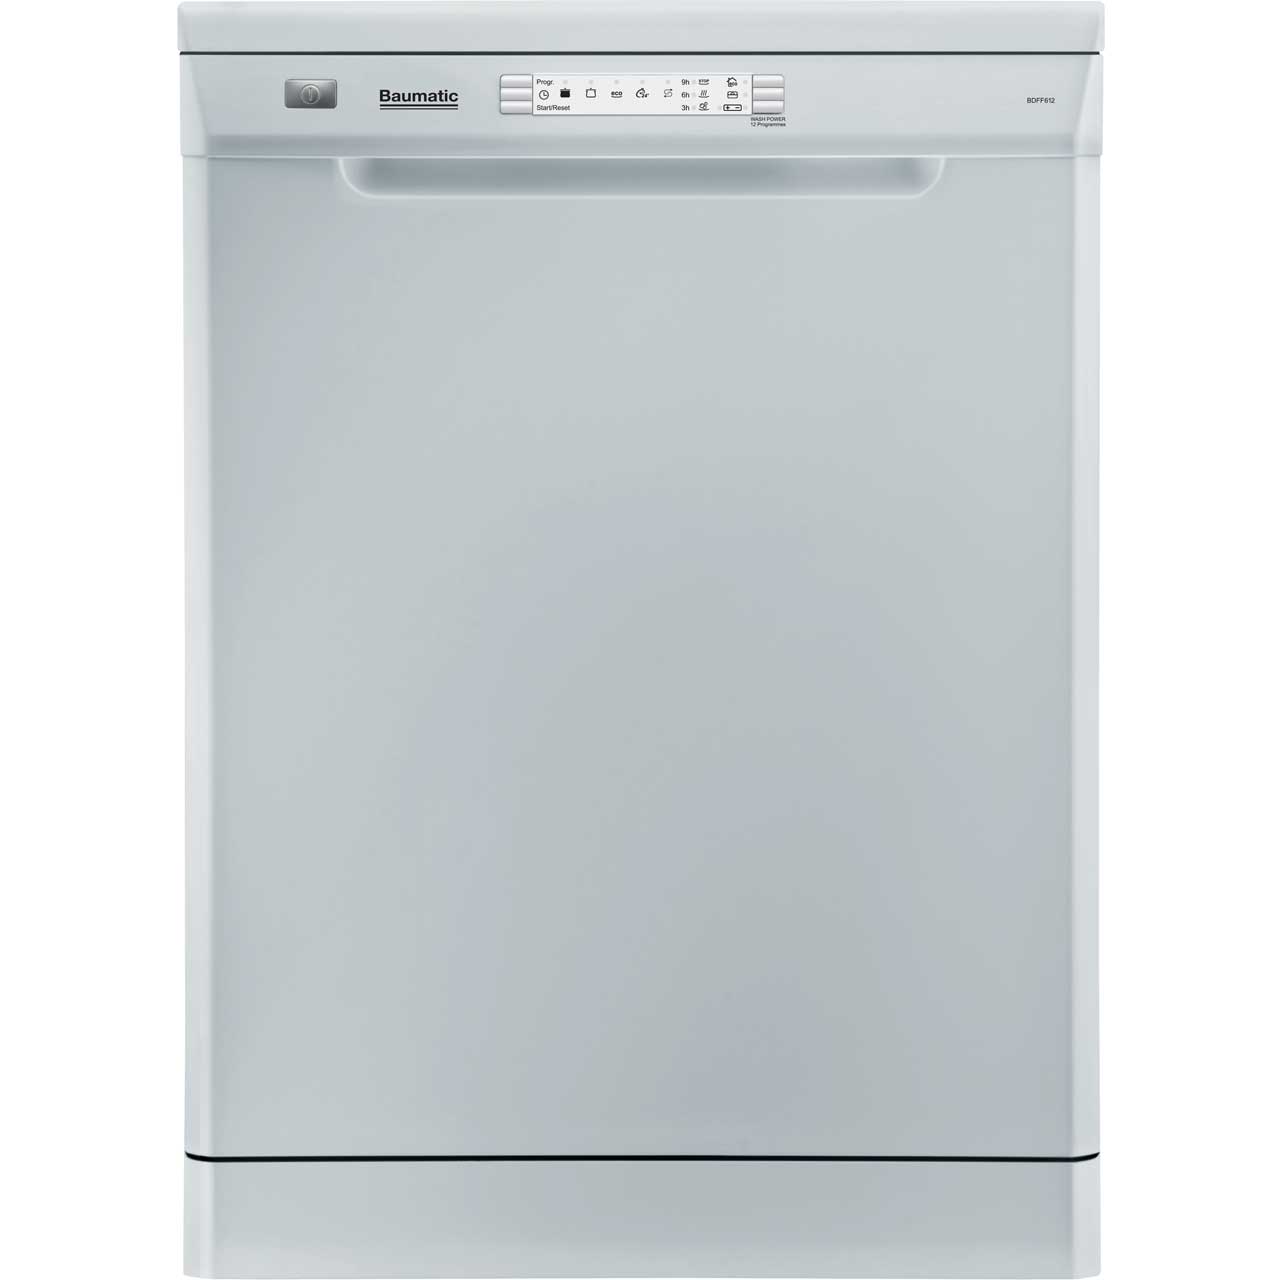 Baumatic BDFF612 Free Standing Dishwasher in White